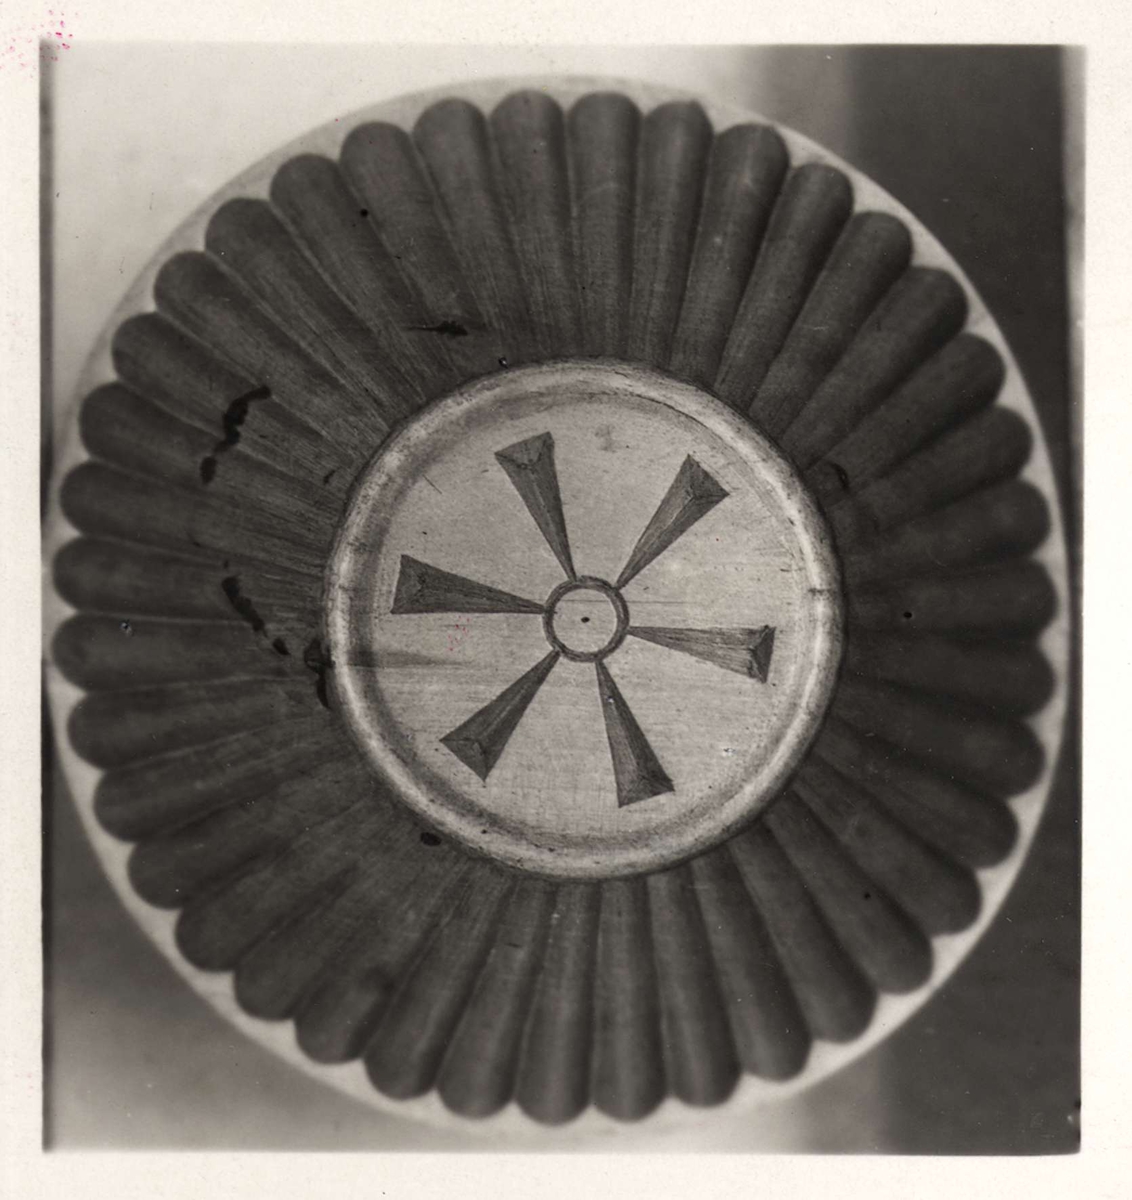 Ett grått 22 x 28 cm stort grått kartongblad med två fastklistrade svartvita fotografier. Fotografierna visar snidade träskålar. Vid ena fotografiet står "B-873" och vid andra fotografiet står "B-874".